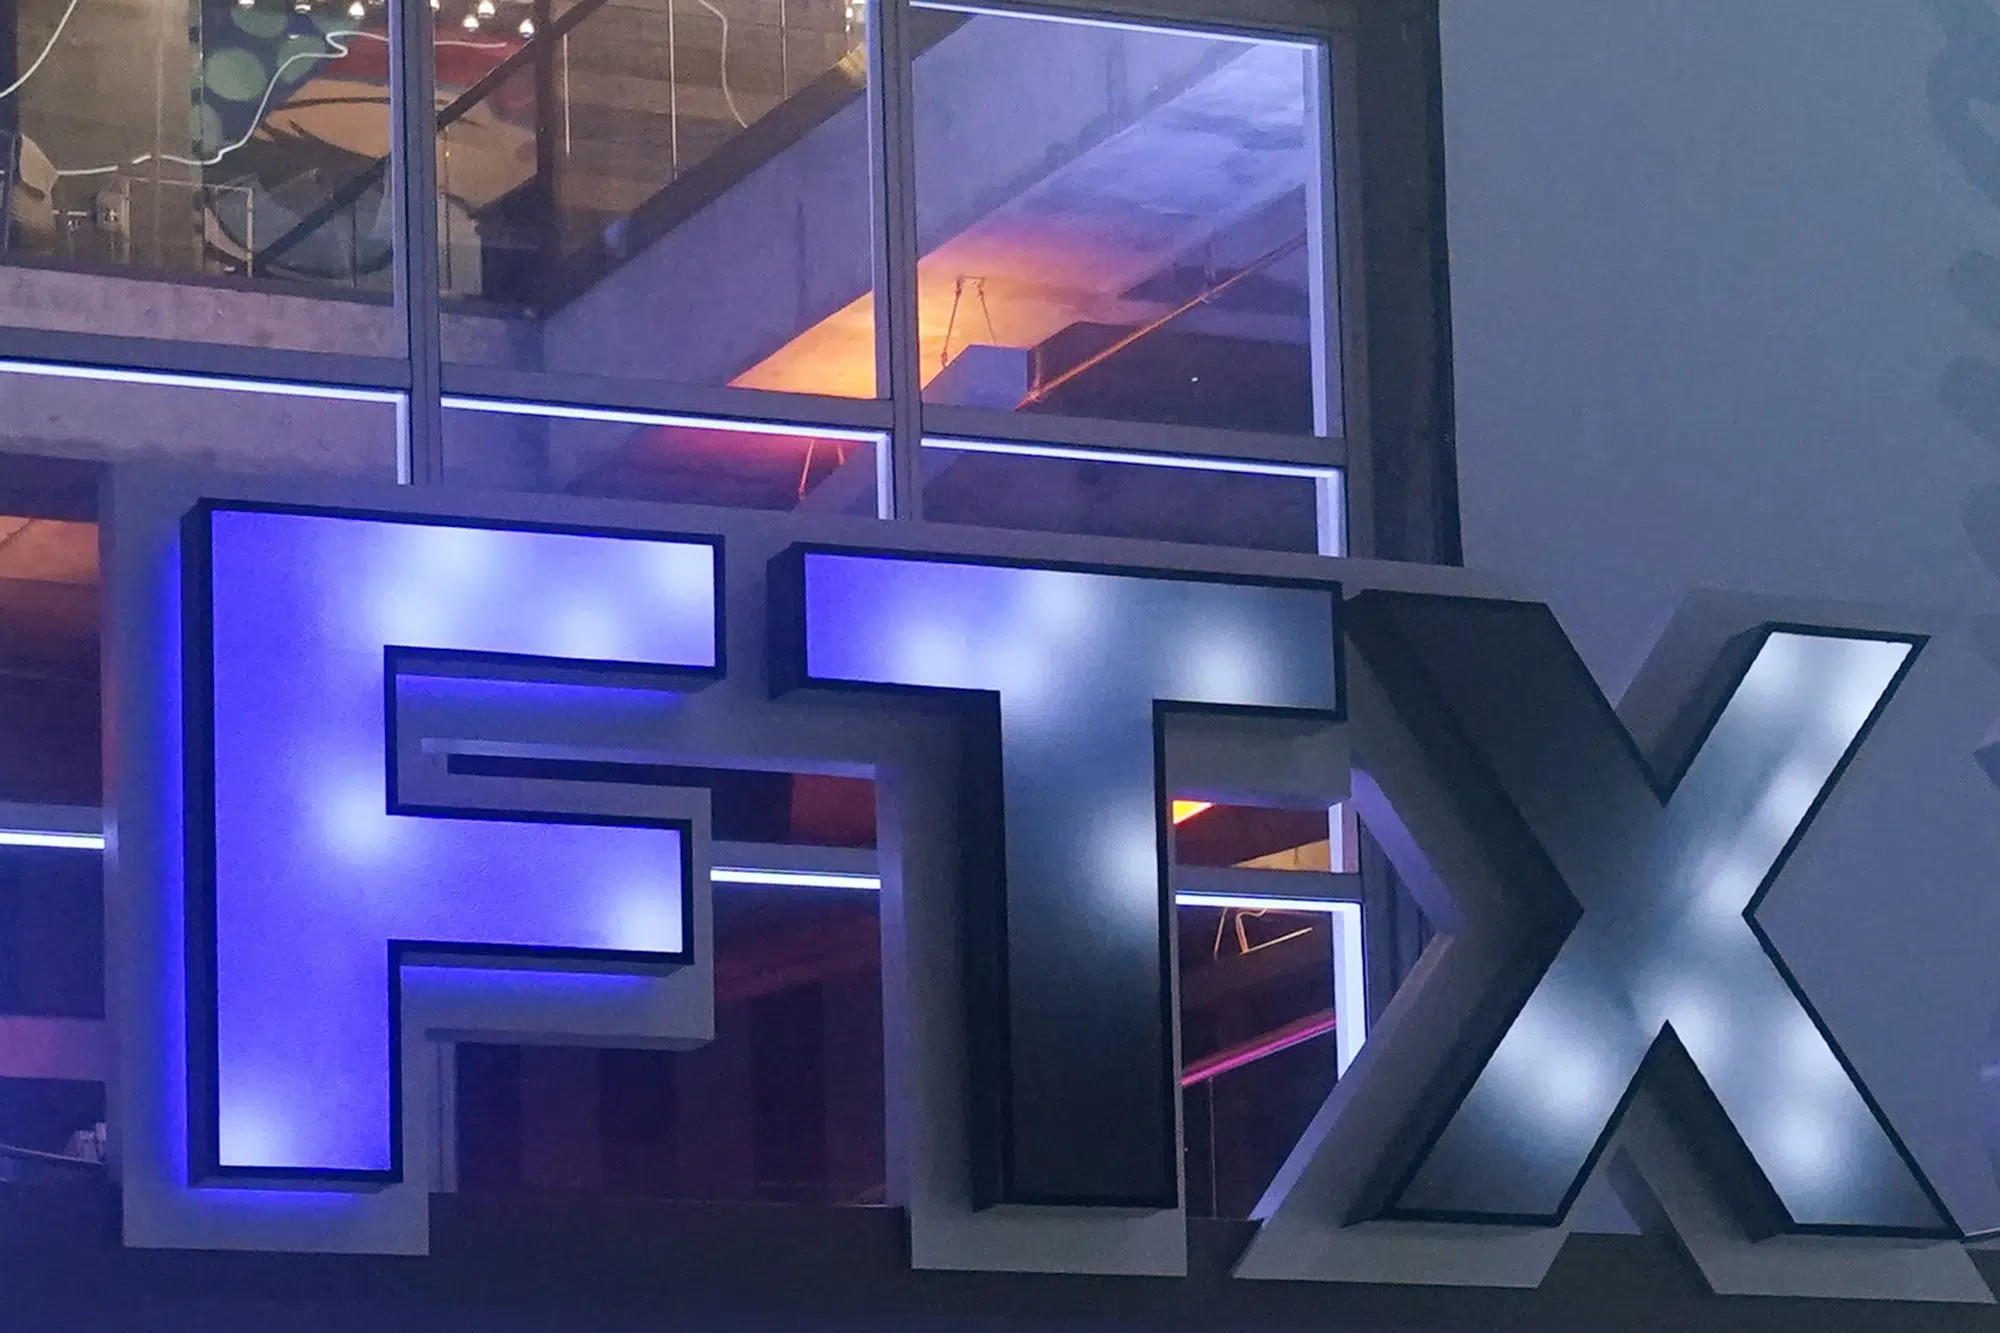 Ftx Bankruptcy Judge Dismisses Media Challenge, Says Customer Names Can Be Kept Secret